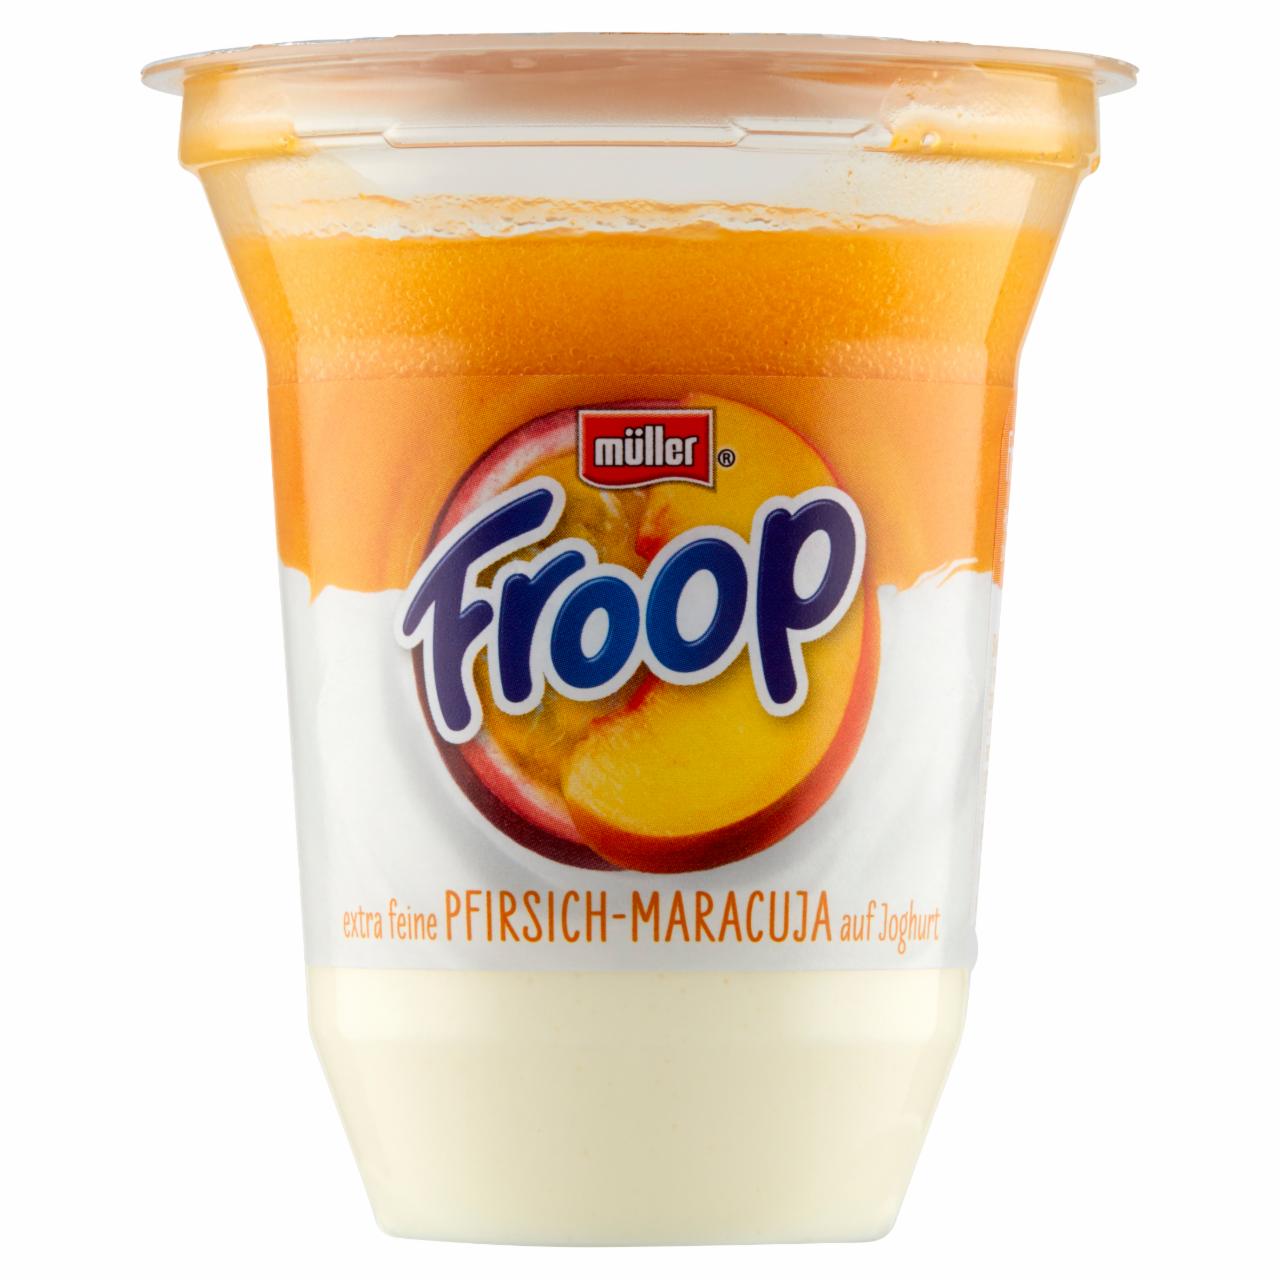 Zdjęcia - Müller Froop Produkt mleczny na bazie jogurtu z wsadem owocowym o smaku brzoskwini i marakui 150 g